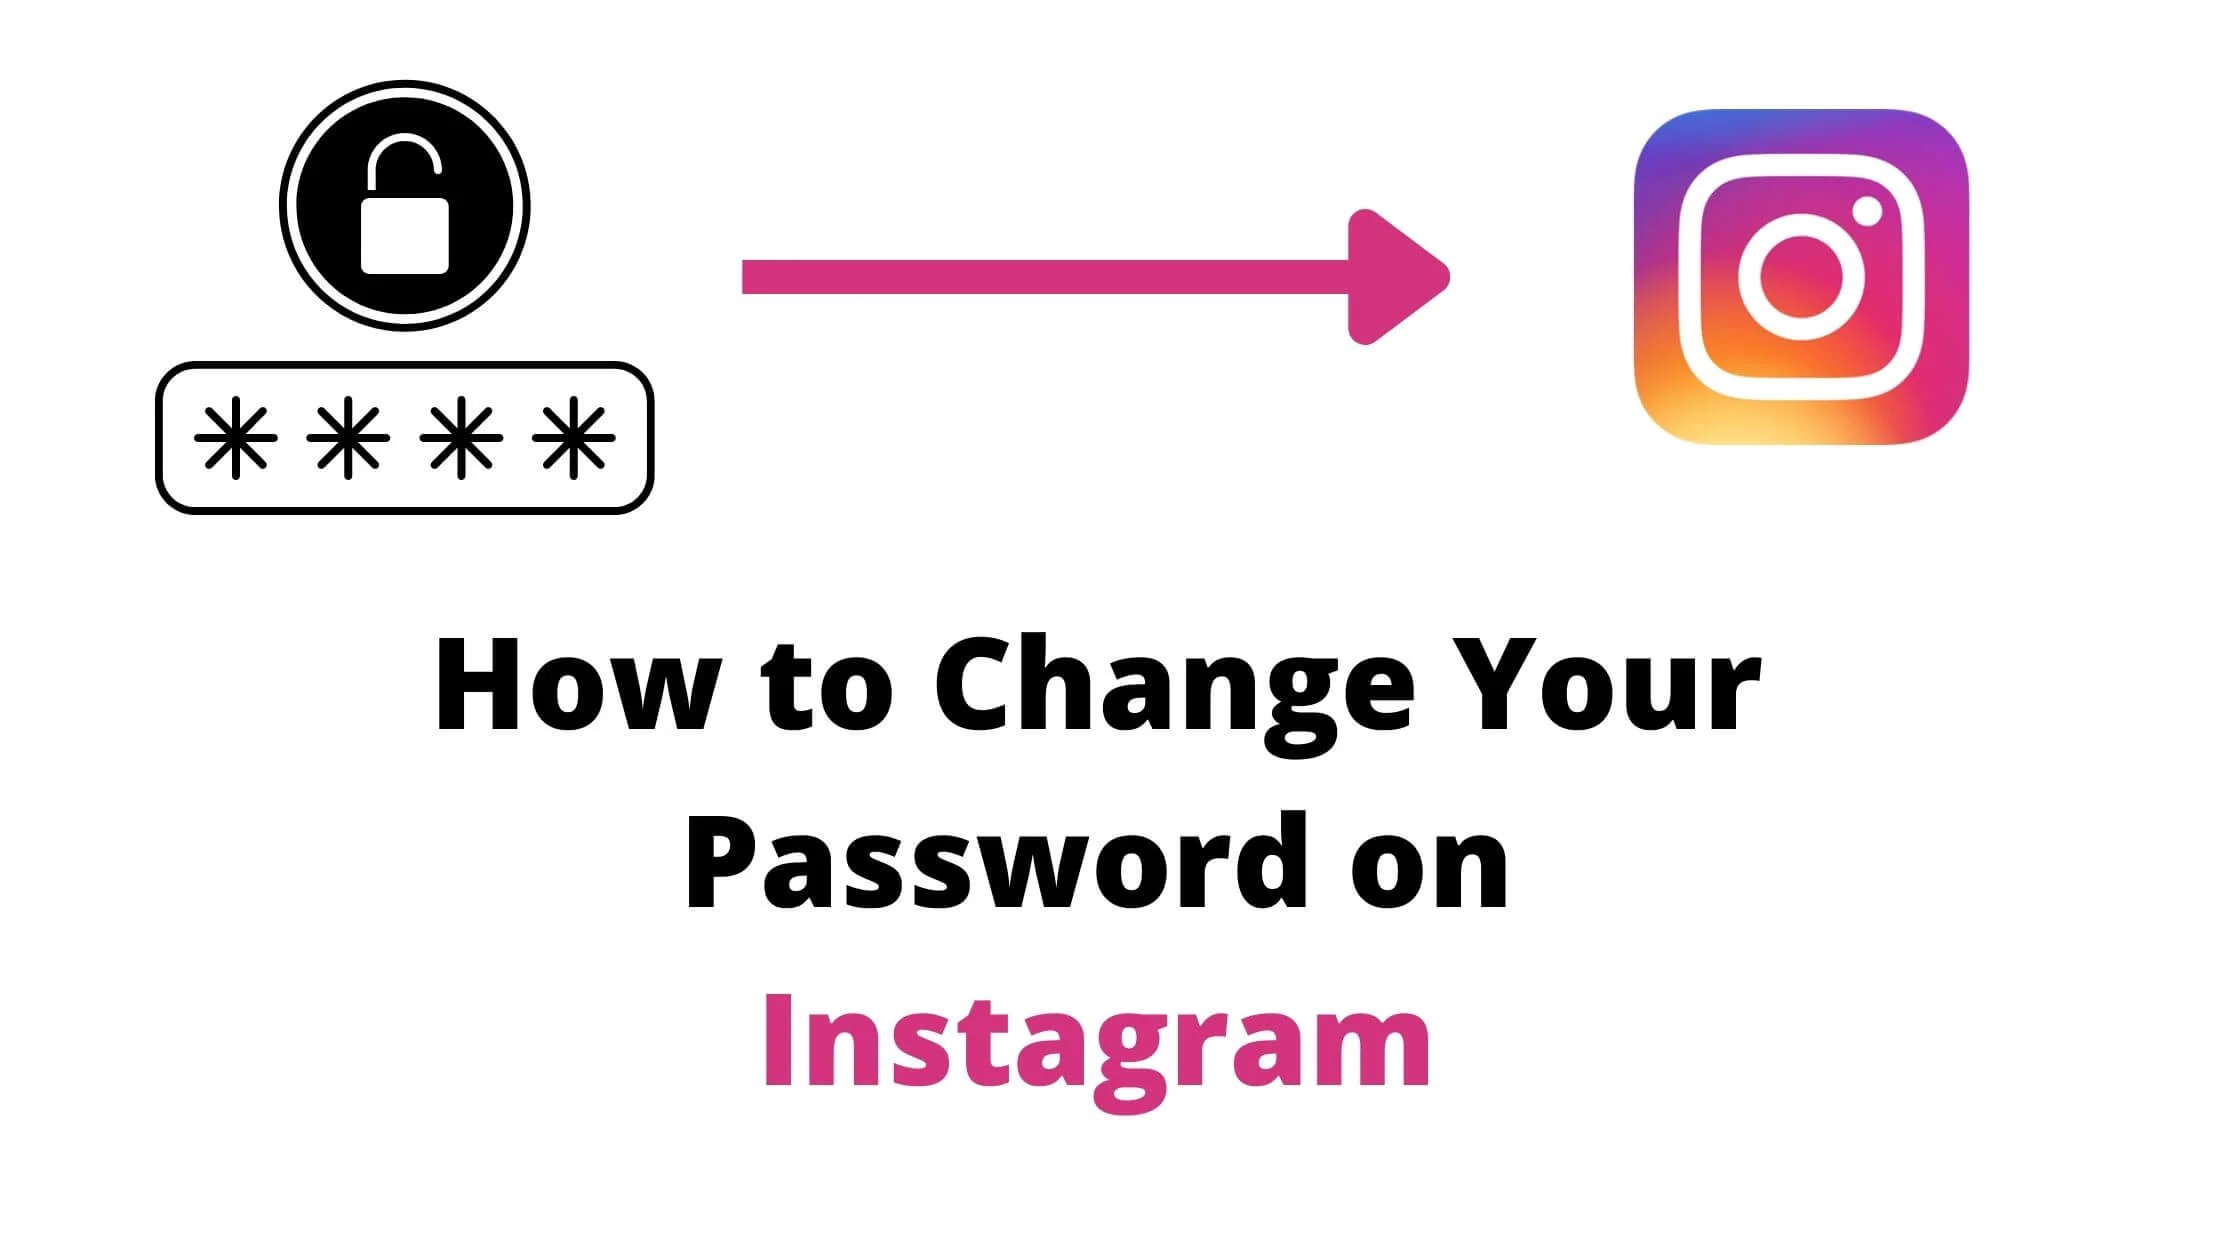 Change Your Password on Instagram